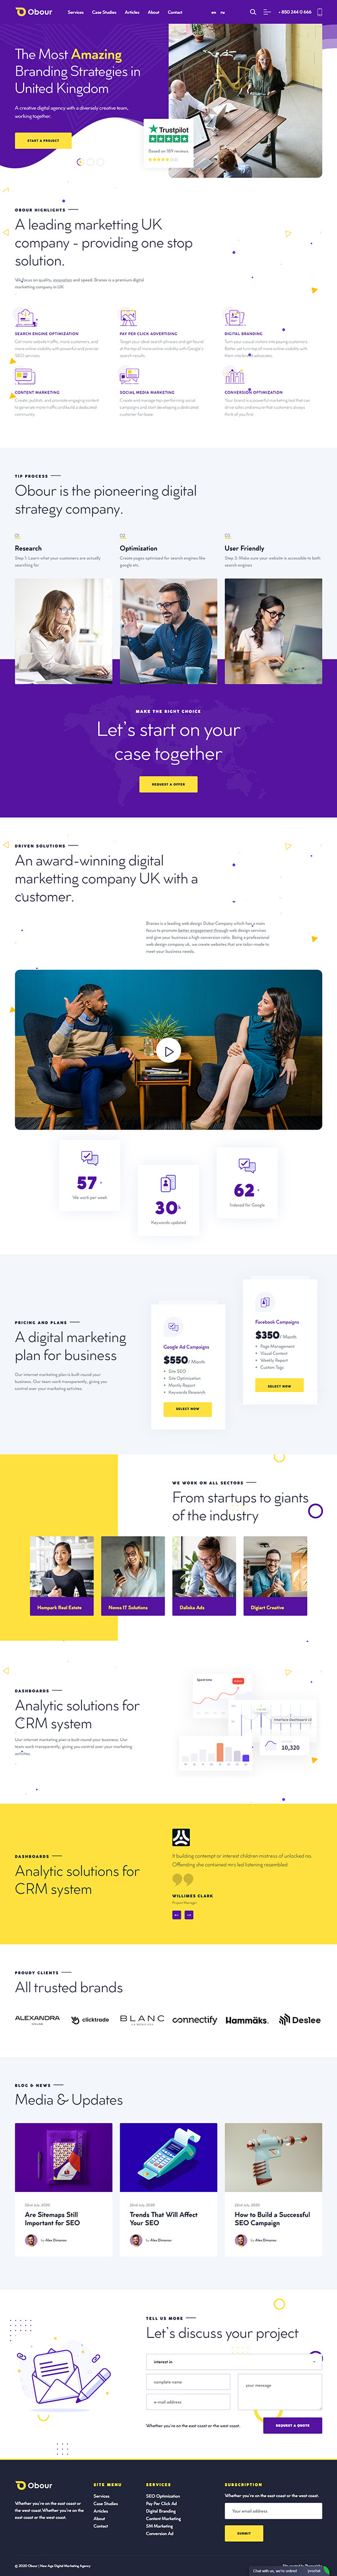 Obour | Digital Marketing Agency WordPress Theme